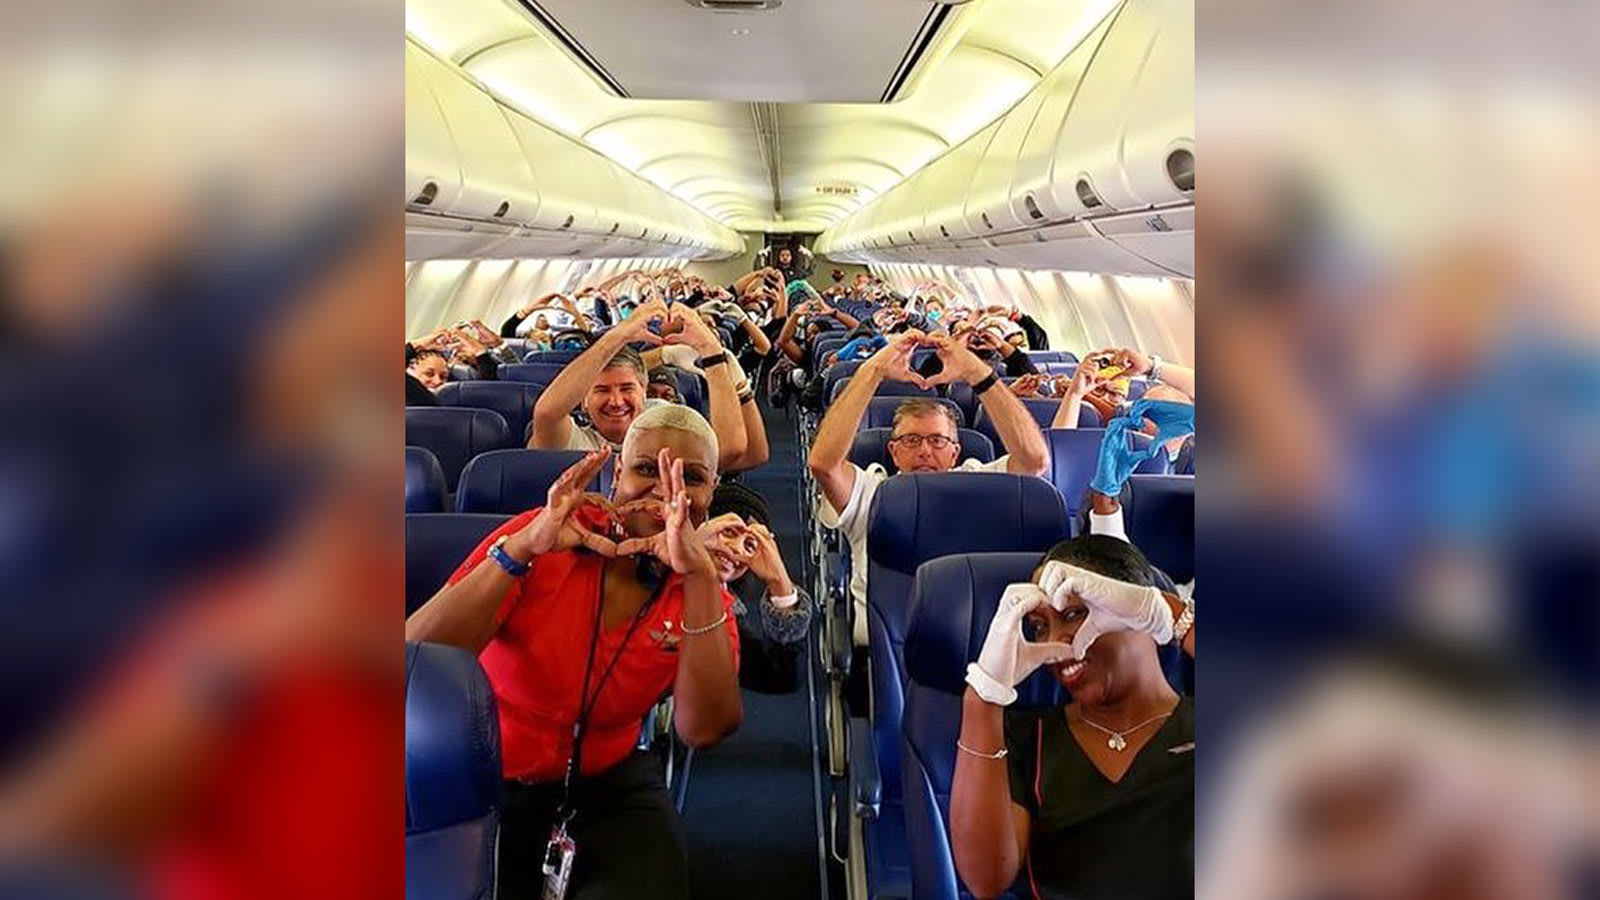 شركة طيران تحتفي بالعاملين في مجال الرعاية الصحية عبر صورة مؤثرة